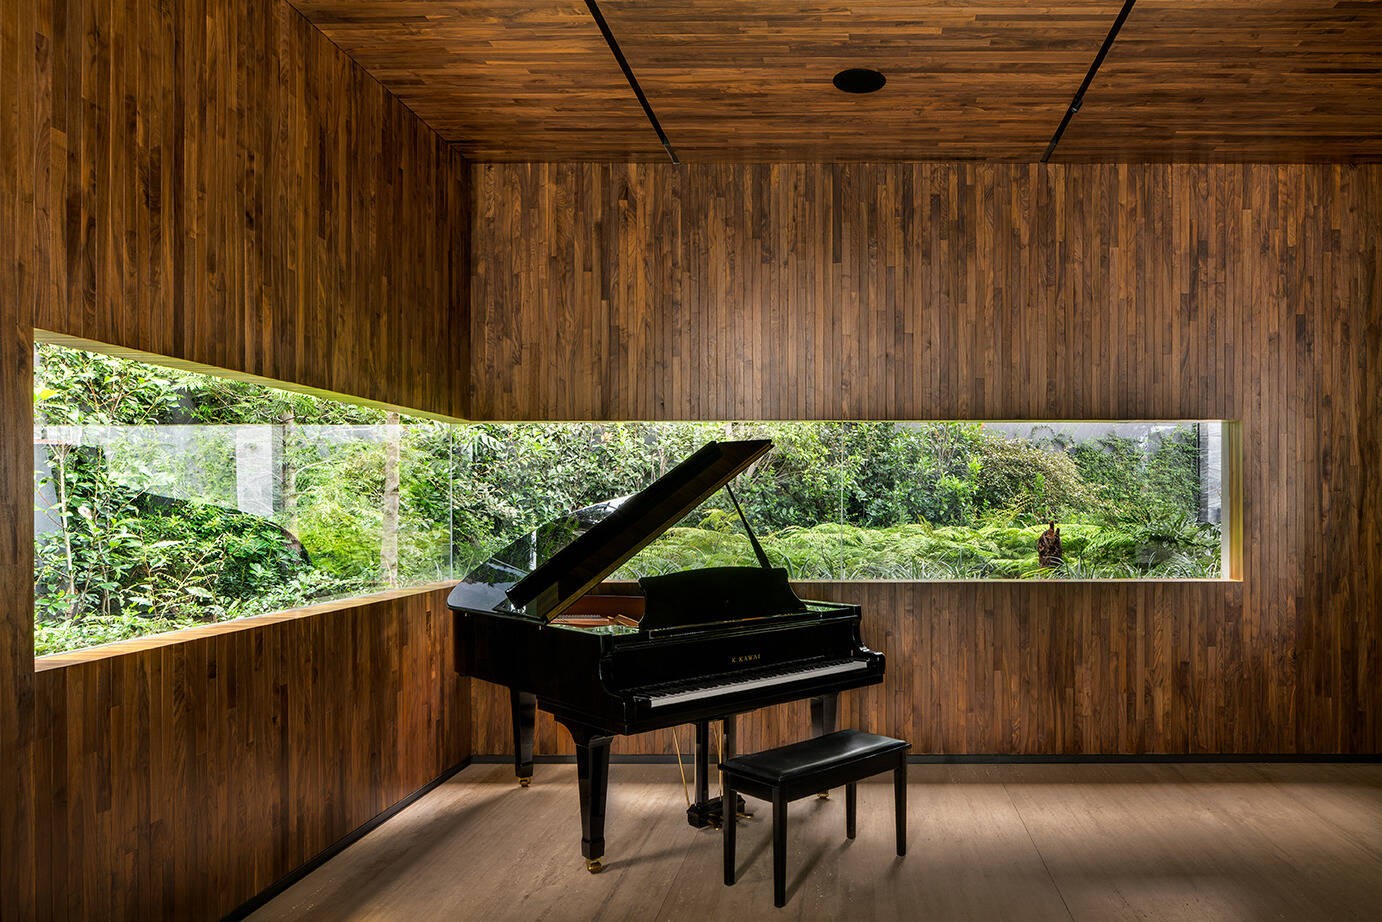 
Phòng đàn piano với hệ cửa sổ kính đặc biệt
